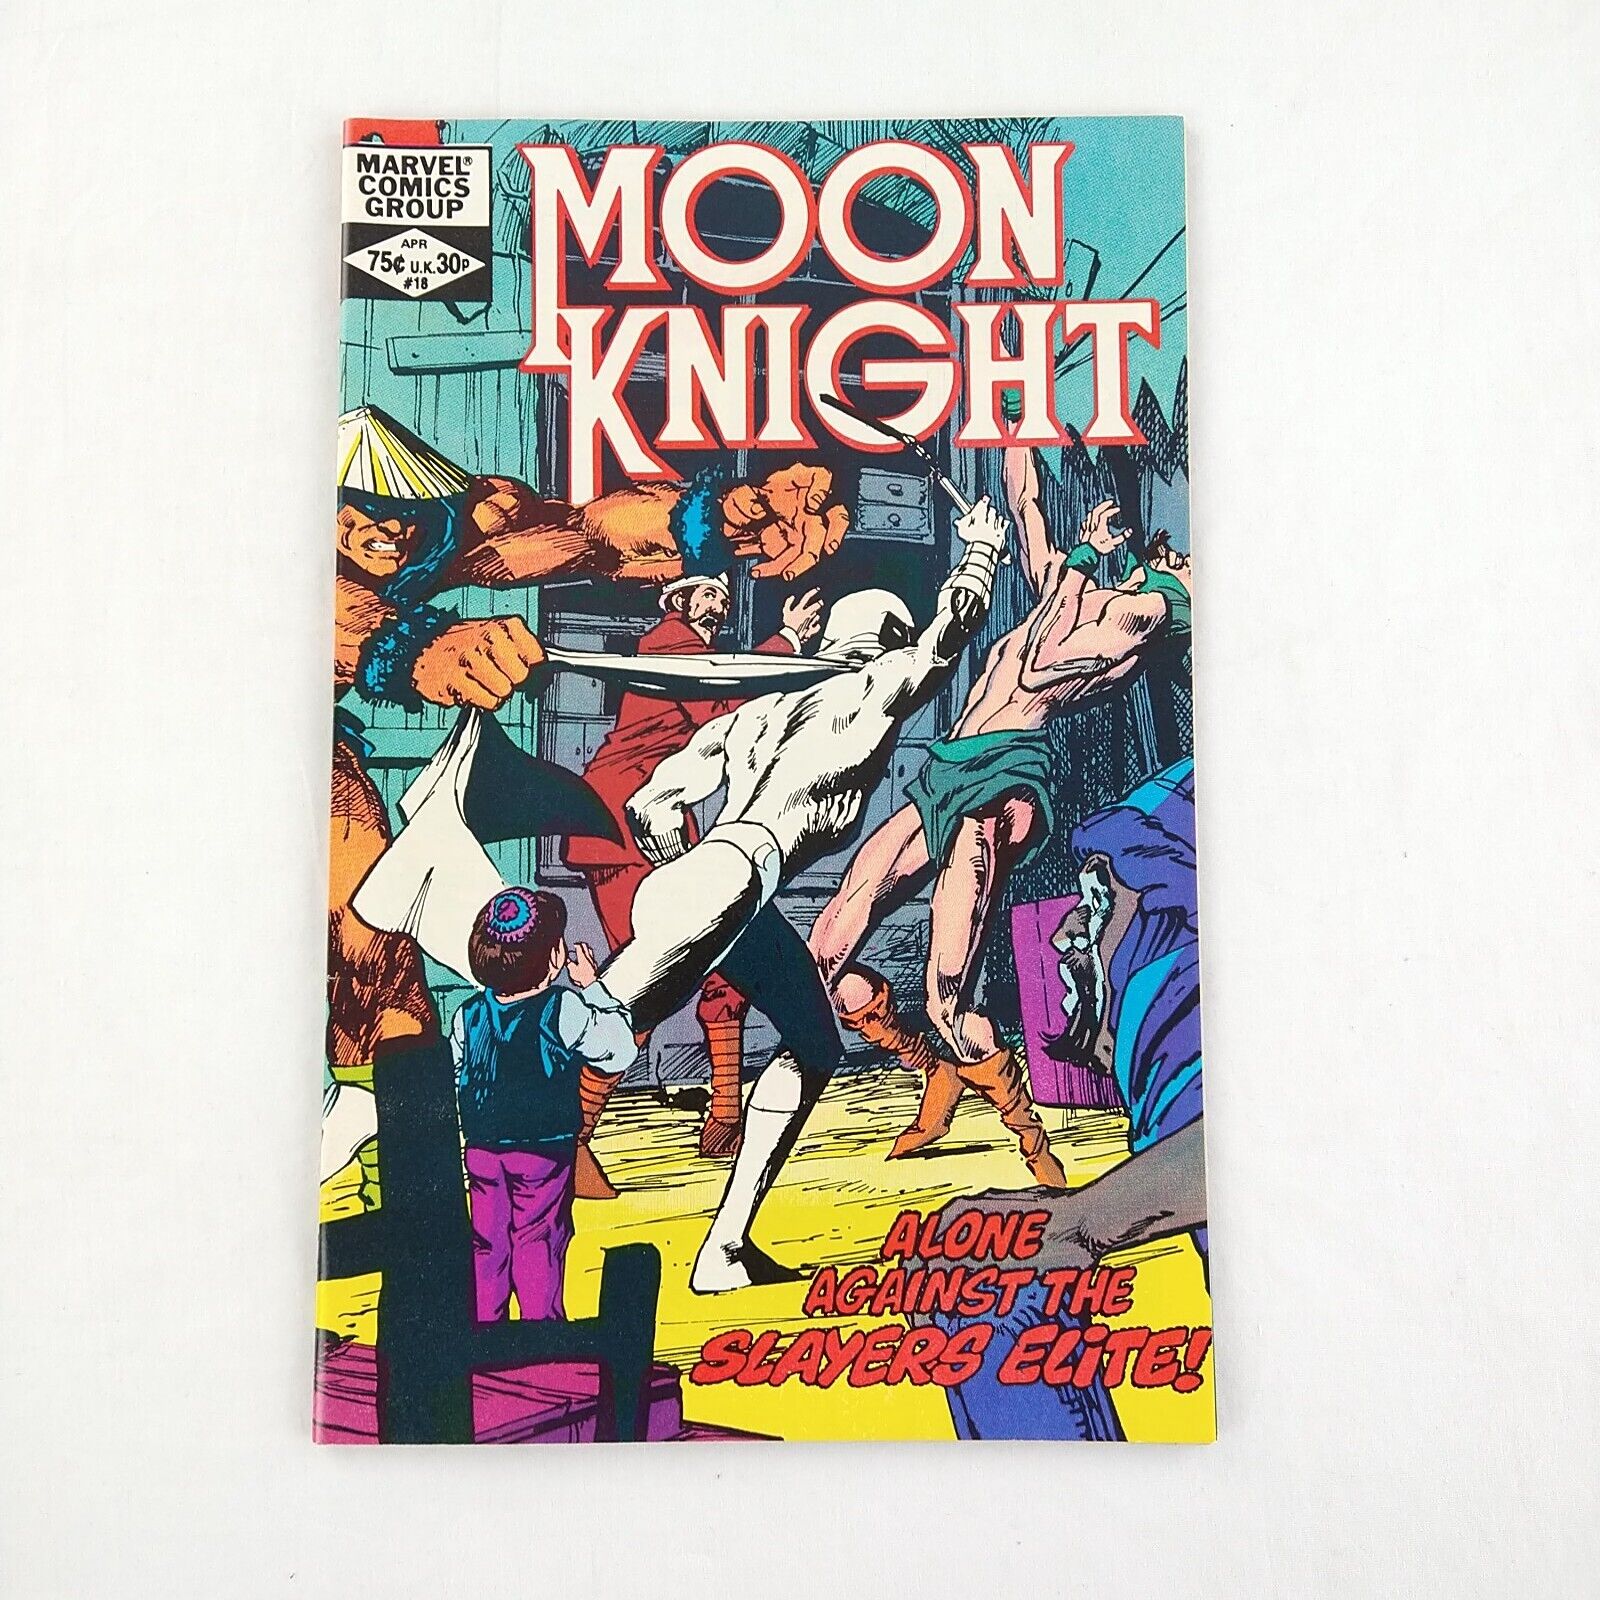 Moon Knight #18 Bill Sienkiewicz Cover (1982 Marvel Comics)